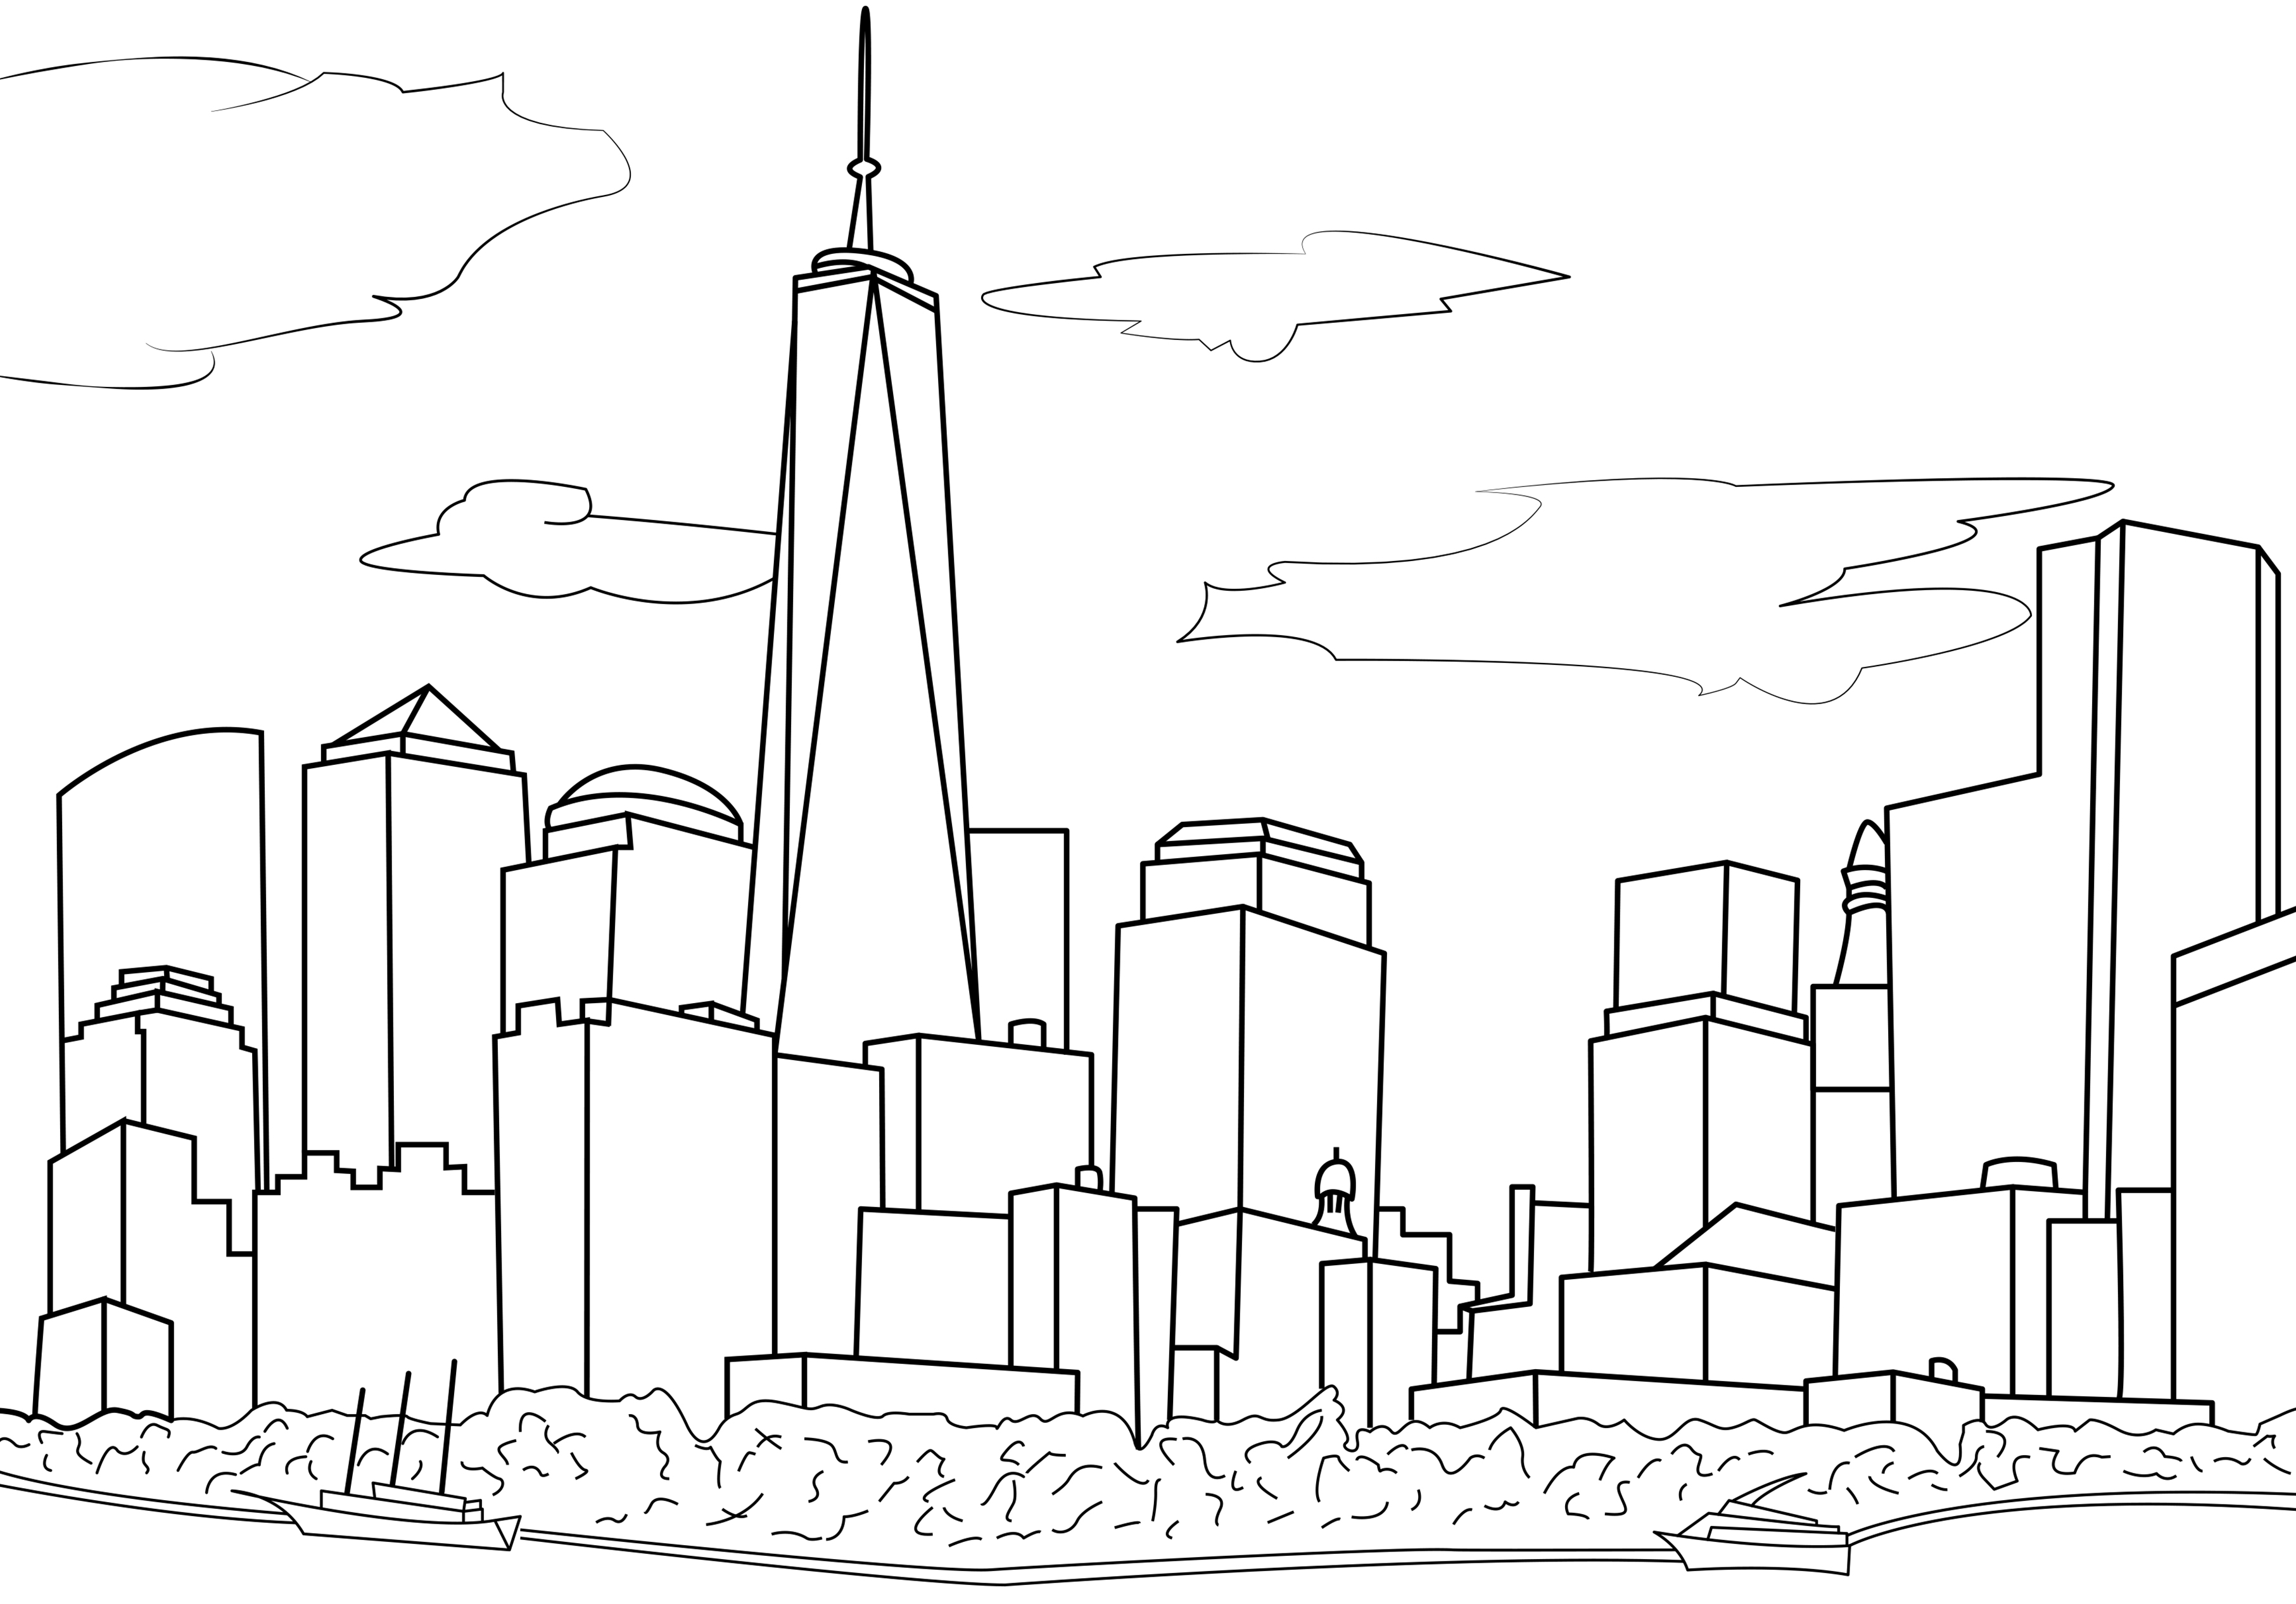 Dibujo sencillo que representa el horizonte de Nueva York. El horizonte de Nueva York es emblemático y reconocible en todo el mundo. Cuenta con muchos rascacielos famosos, como el Empire State Building, el Chrysler Building y el One World Trade Center. En este dibujo, sólo podemos ver el One World Trade Center; los demás edificios son ficticios.